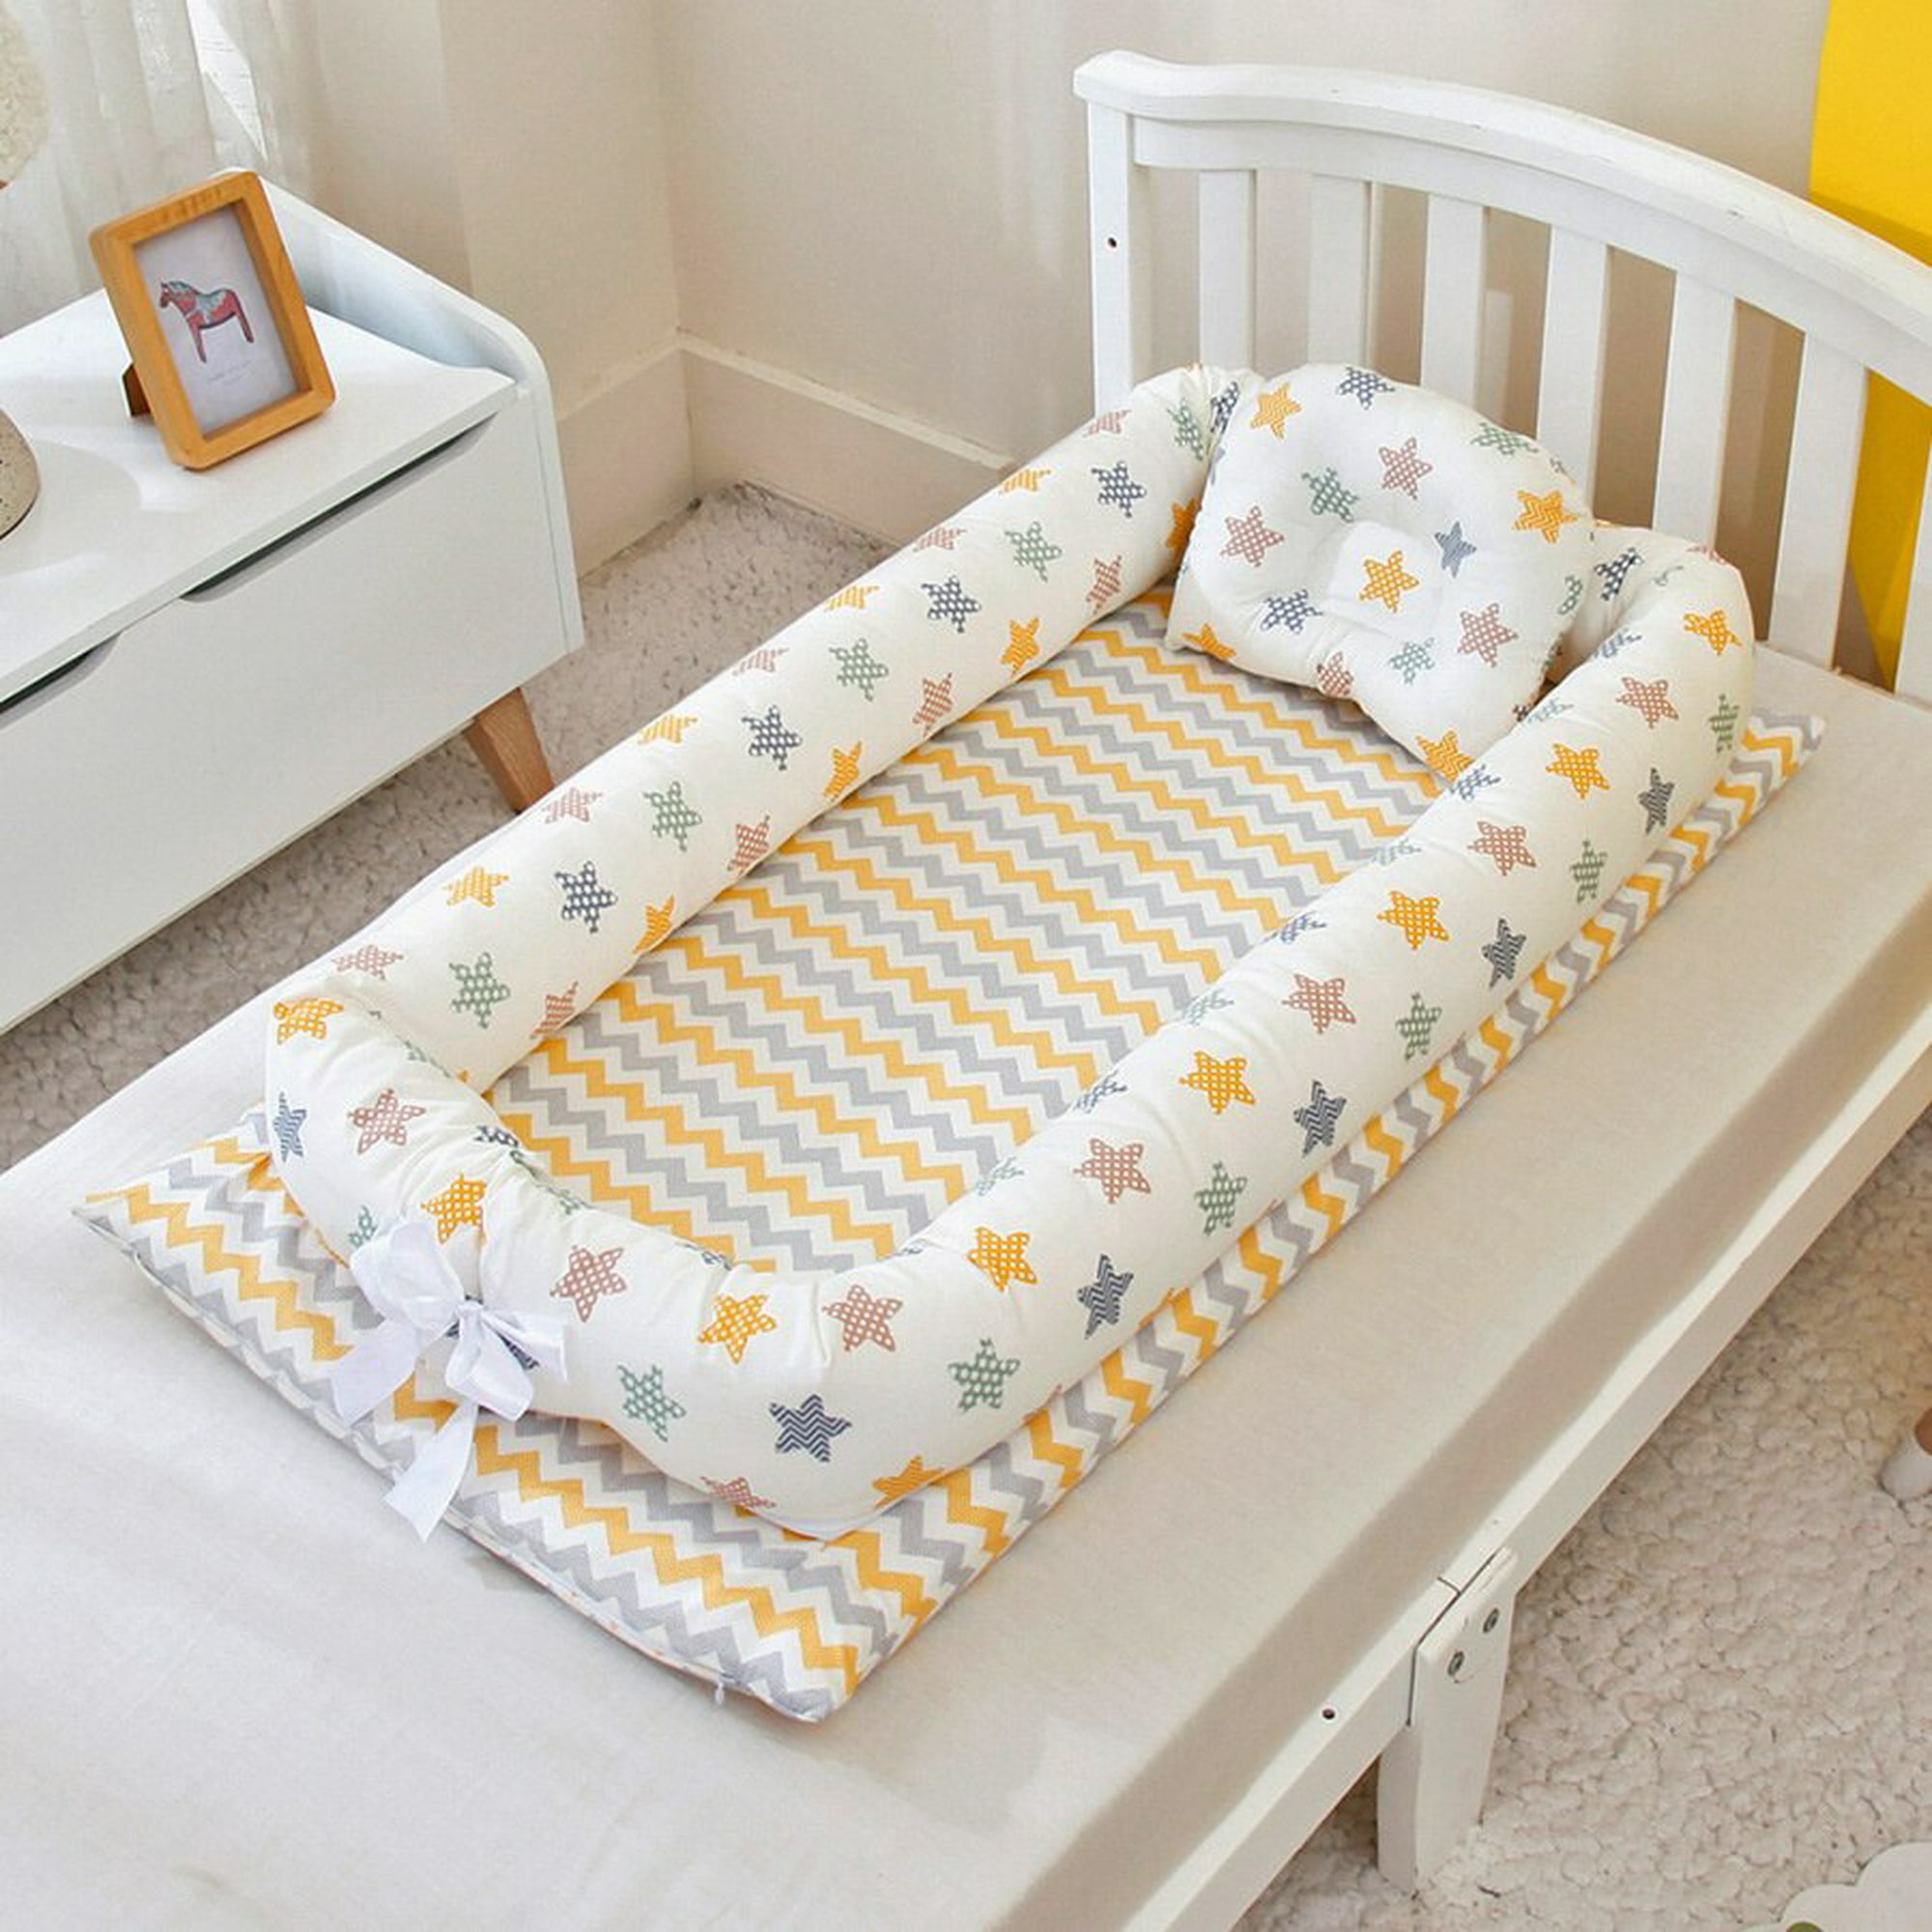 Cuna para bebé, cuna 3 en 1, cama portátil ajustable para bebé, cuna de  bebé recién nacido, cama imprescindible, color gris